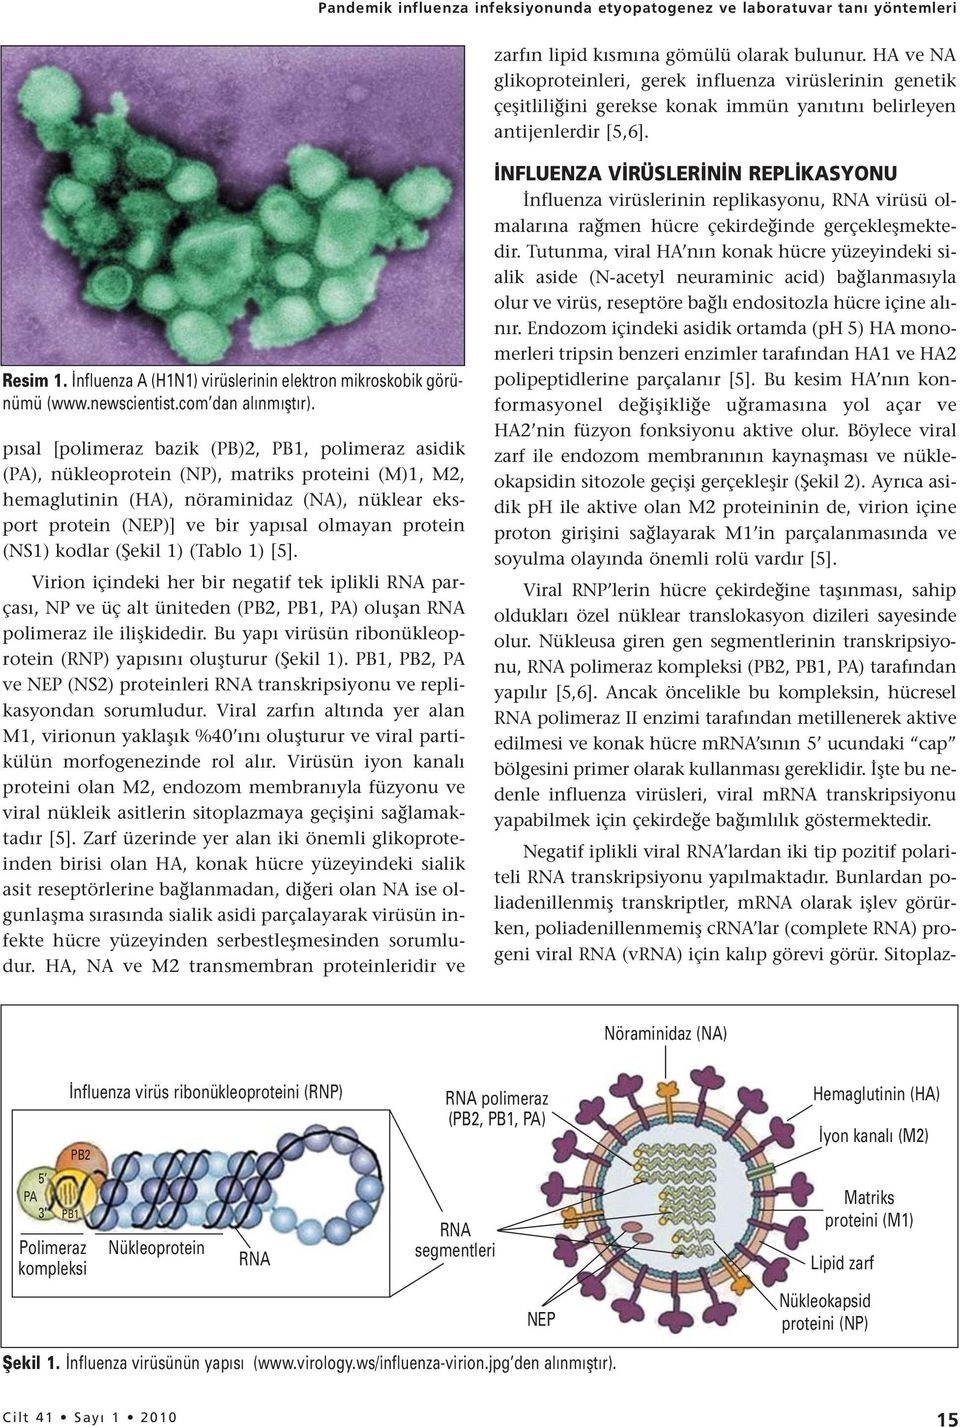 İnfluenza A (H1N1) virüslerinin elektron mikroskobik görünümü (www.newscientist.com dan alınmıştır).